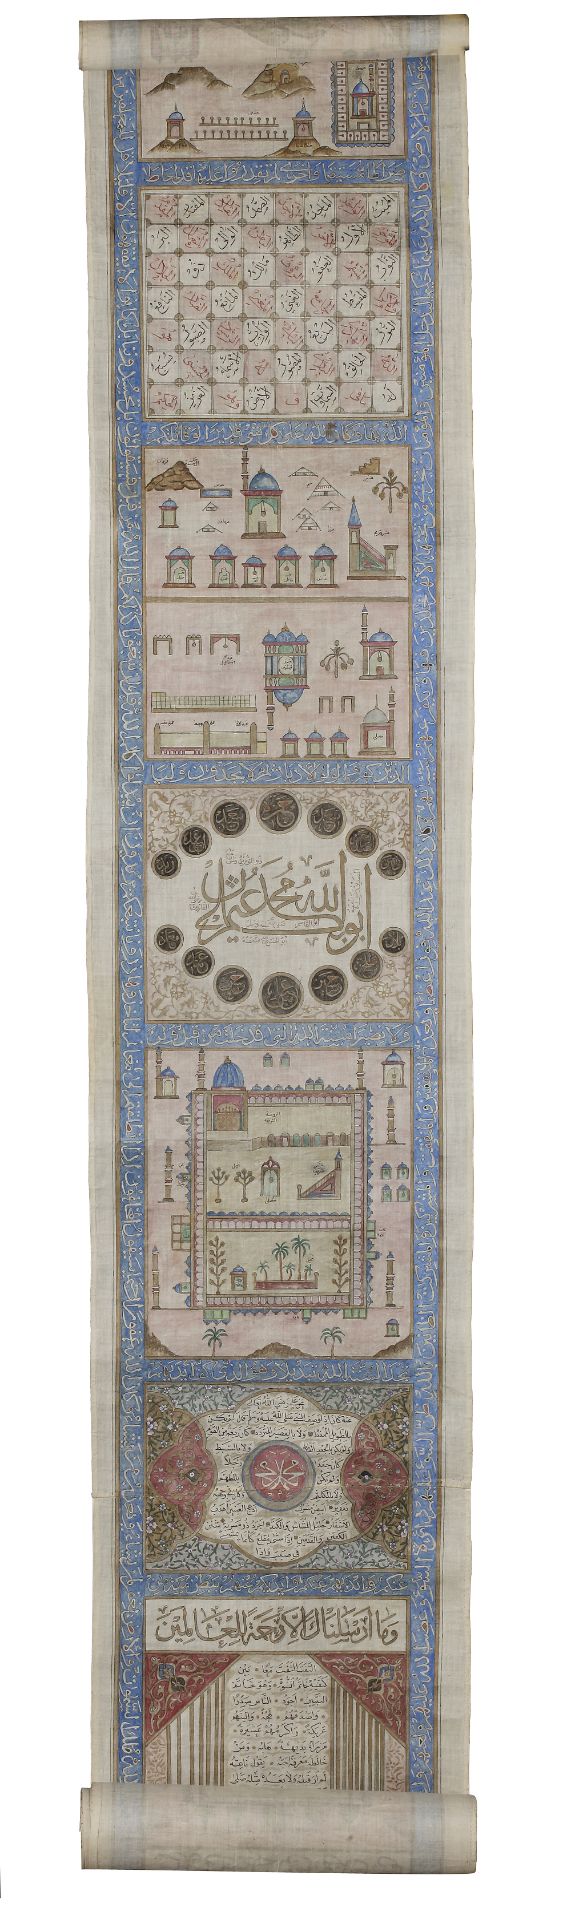 AN OTTOMAN ILLUMINATED HAJJ SCROLL, WRITTEN BY ABDUL-ALAH BIN HUSSAIN IN 1287 AH/1873 AD - Bild 5 aus 12